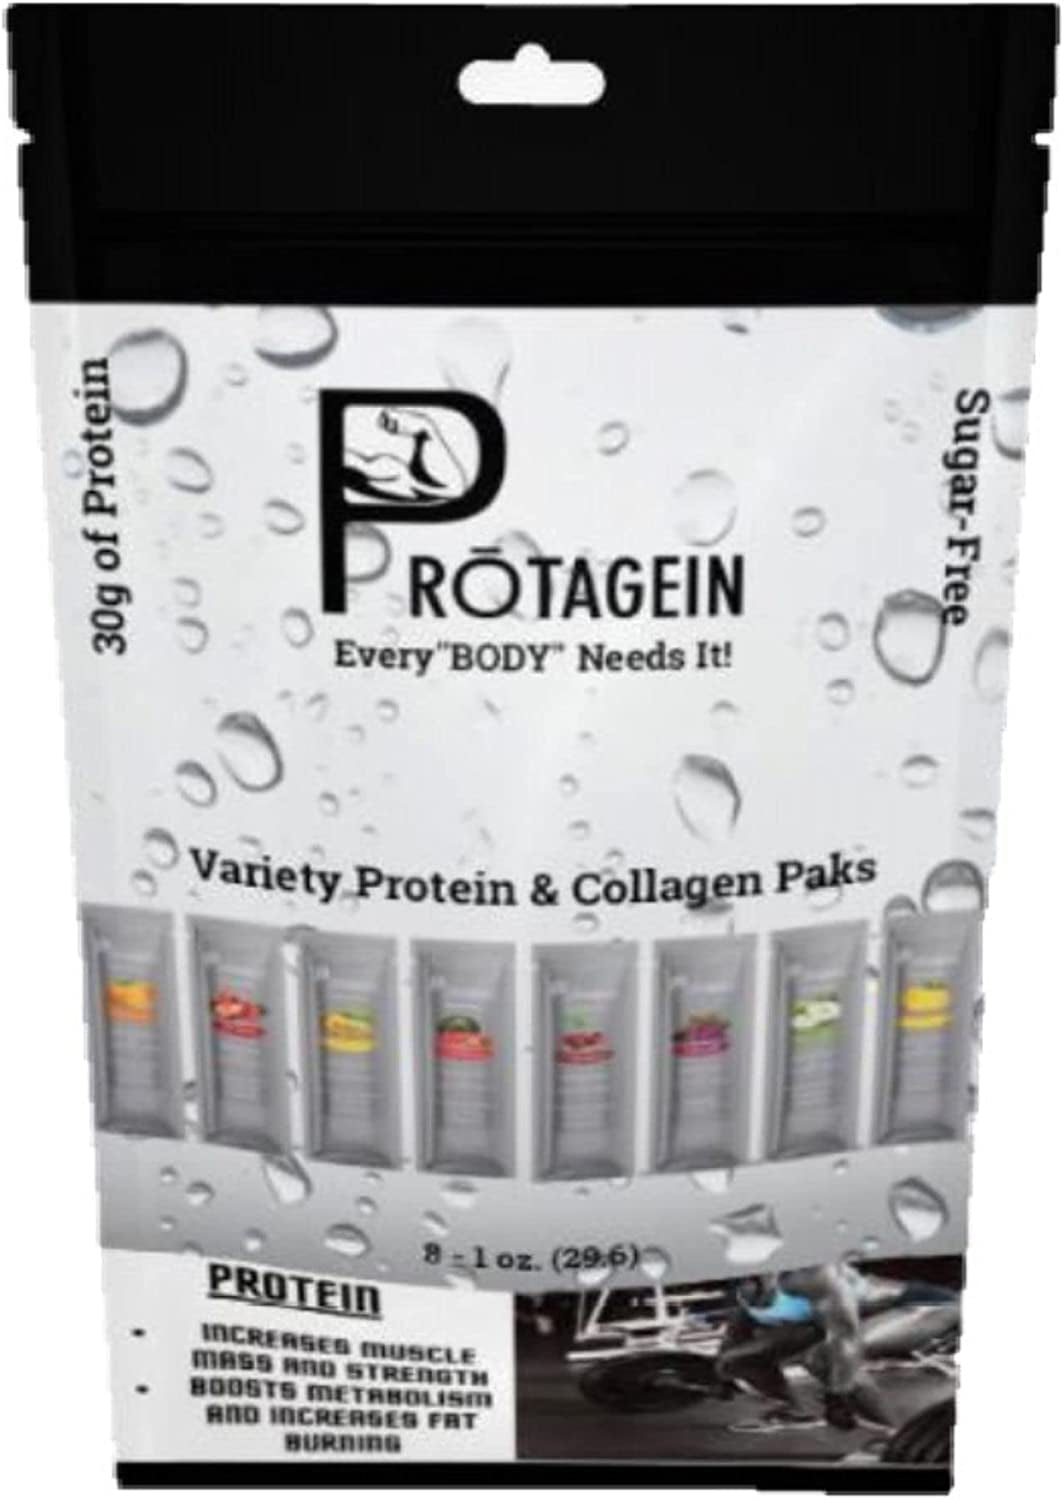 Protagein Protein & Collagen Paks, 8 - 1 Oz Variety Flavored Paks